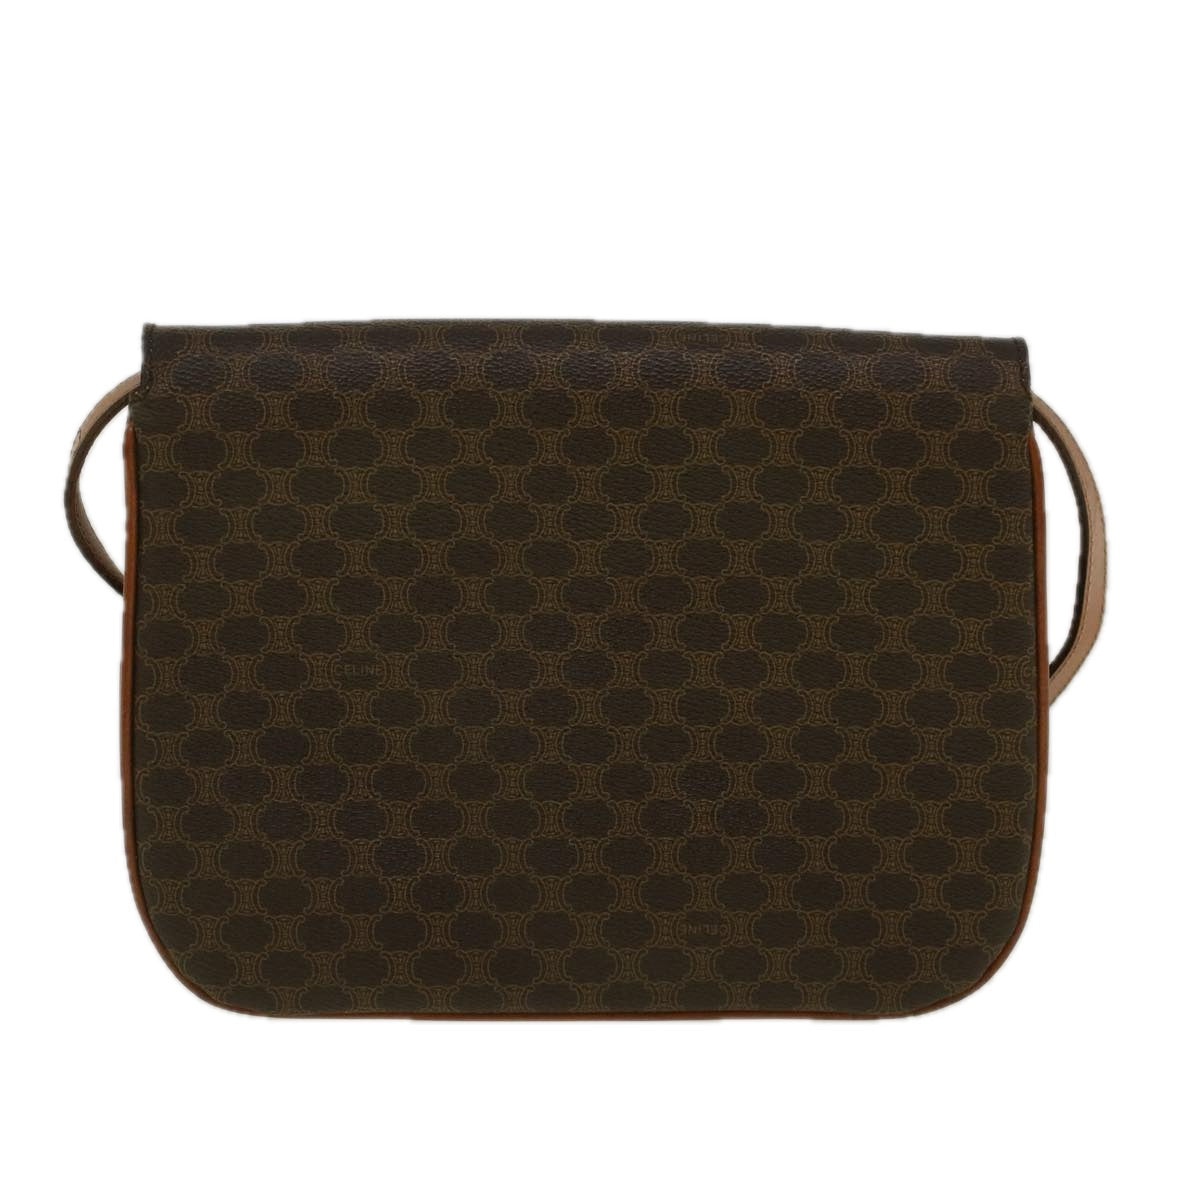 CELINE Macadam Canvas Shoulder Bag PVC Leather Brown Auth 58671 - 0